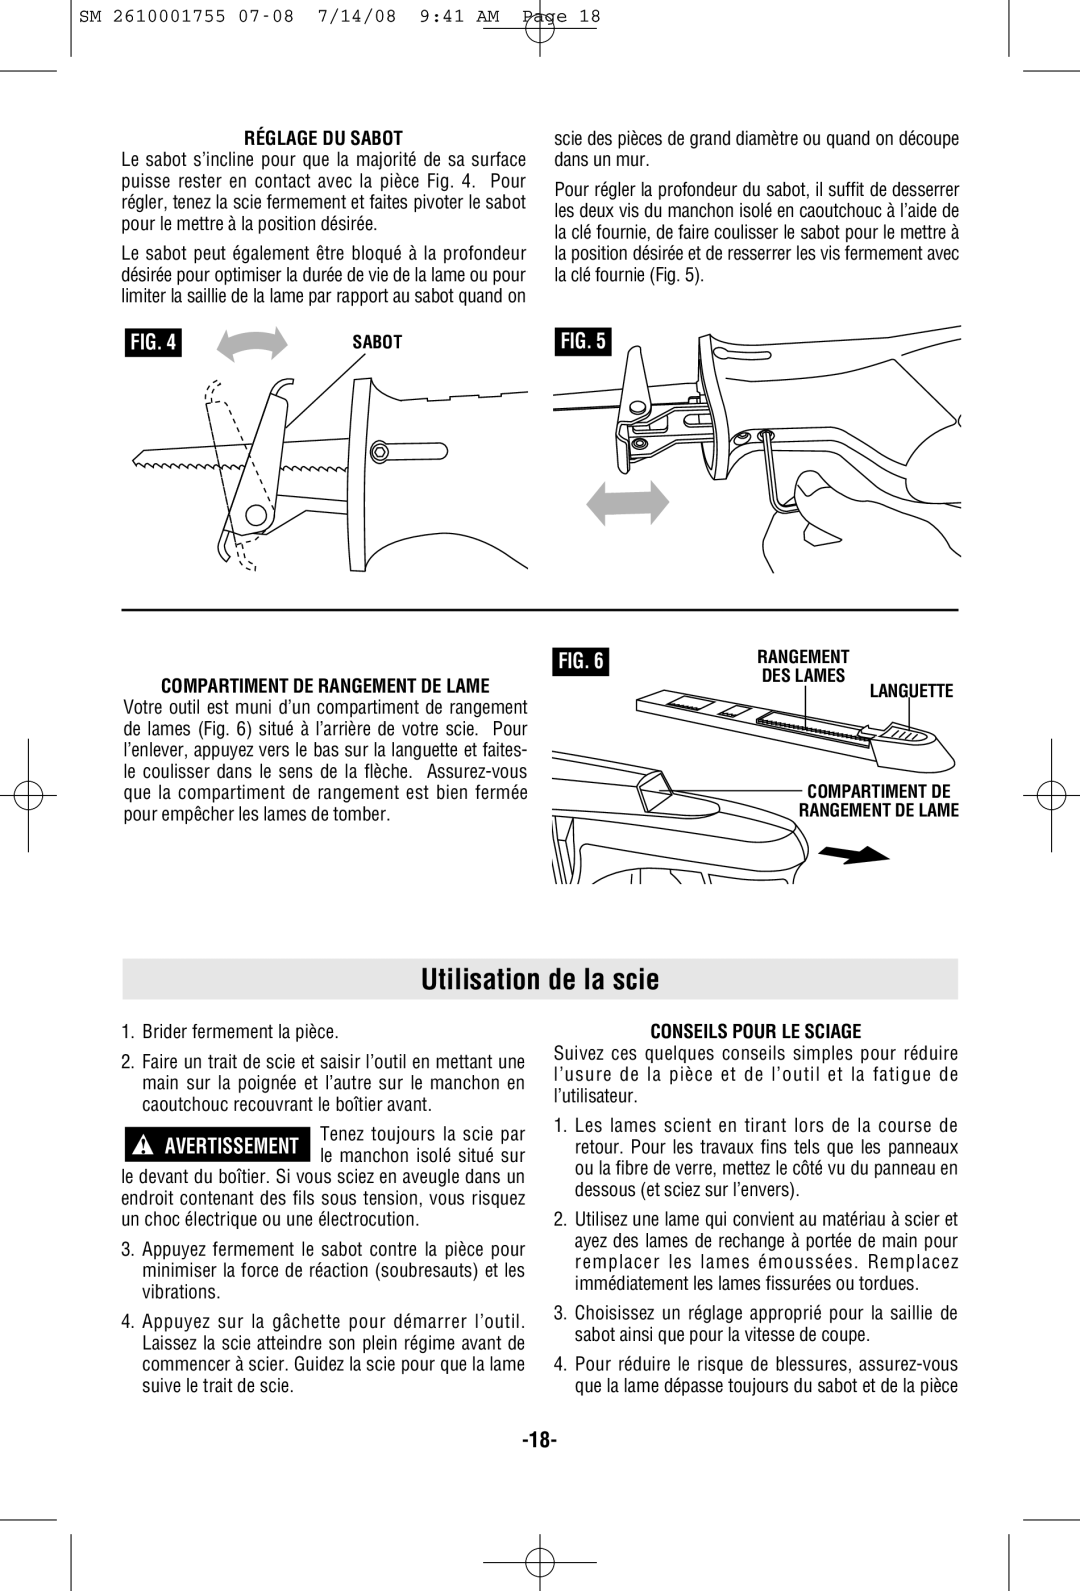 Skil 9215 manual Utilisation de la scie, Réglage Du Sabot, Compartiment De Rangement De Lame, Conseils Pour Le Sciage 